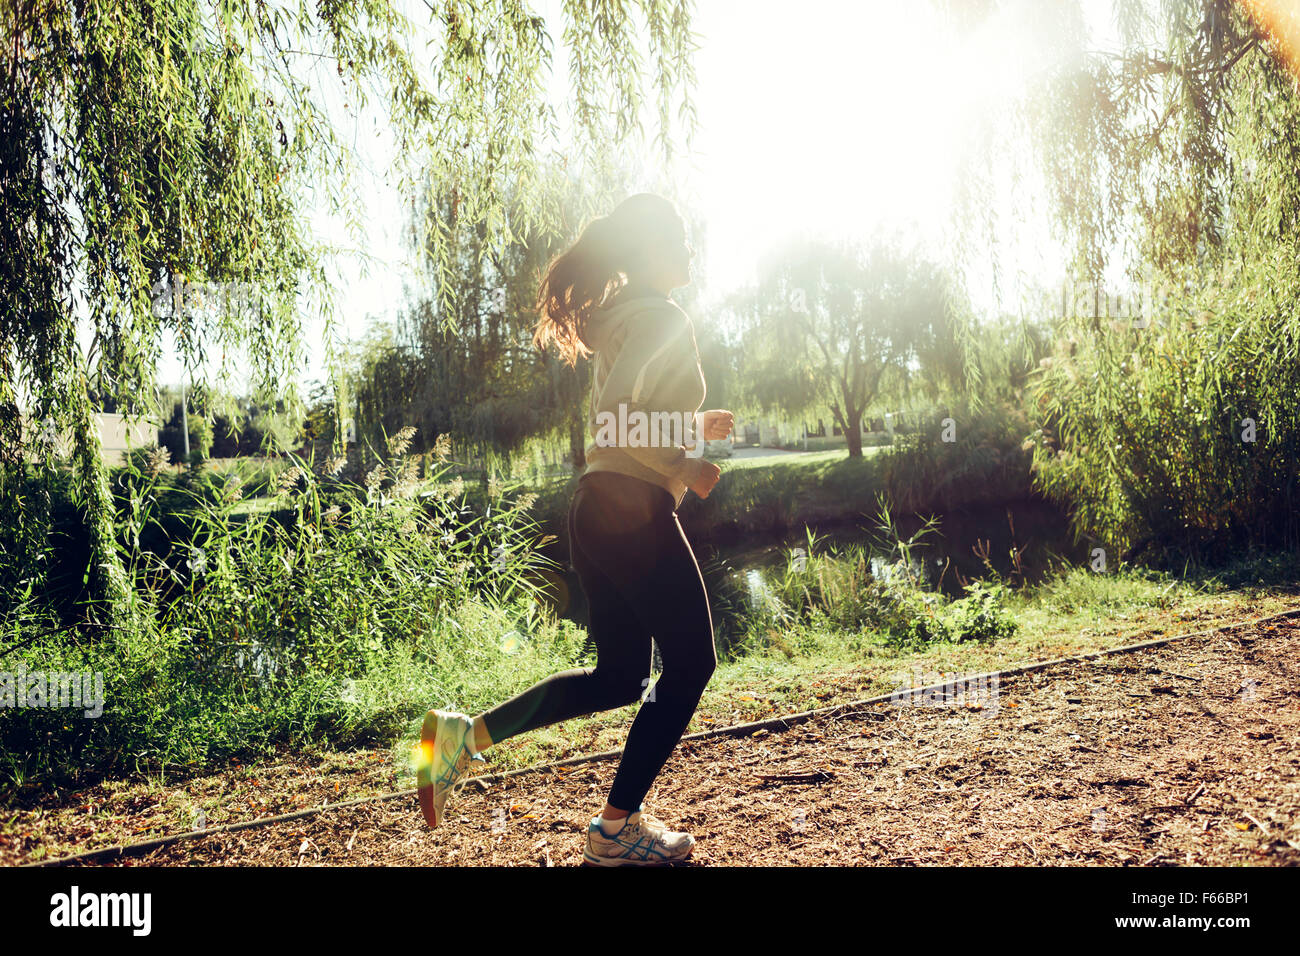 Montare donna bella jogging nel parco e rimanere sano Foto Stock